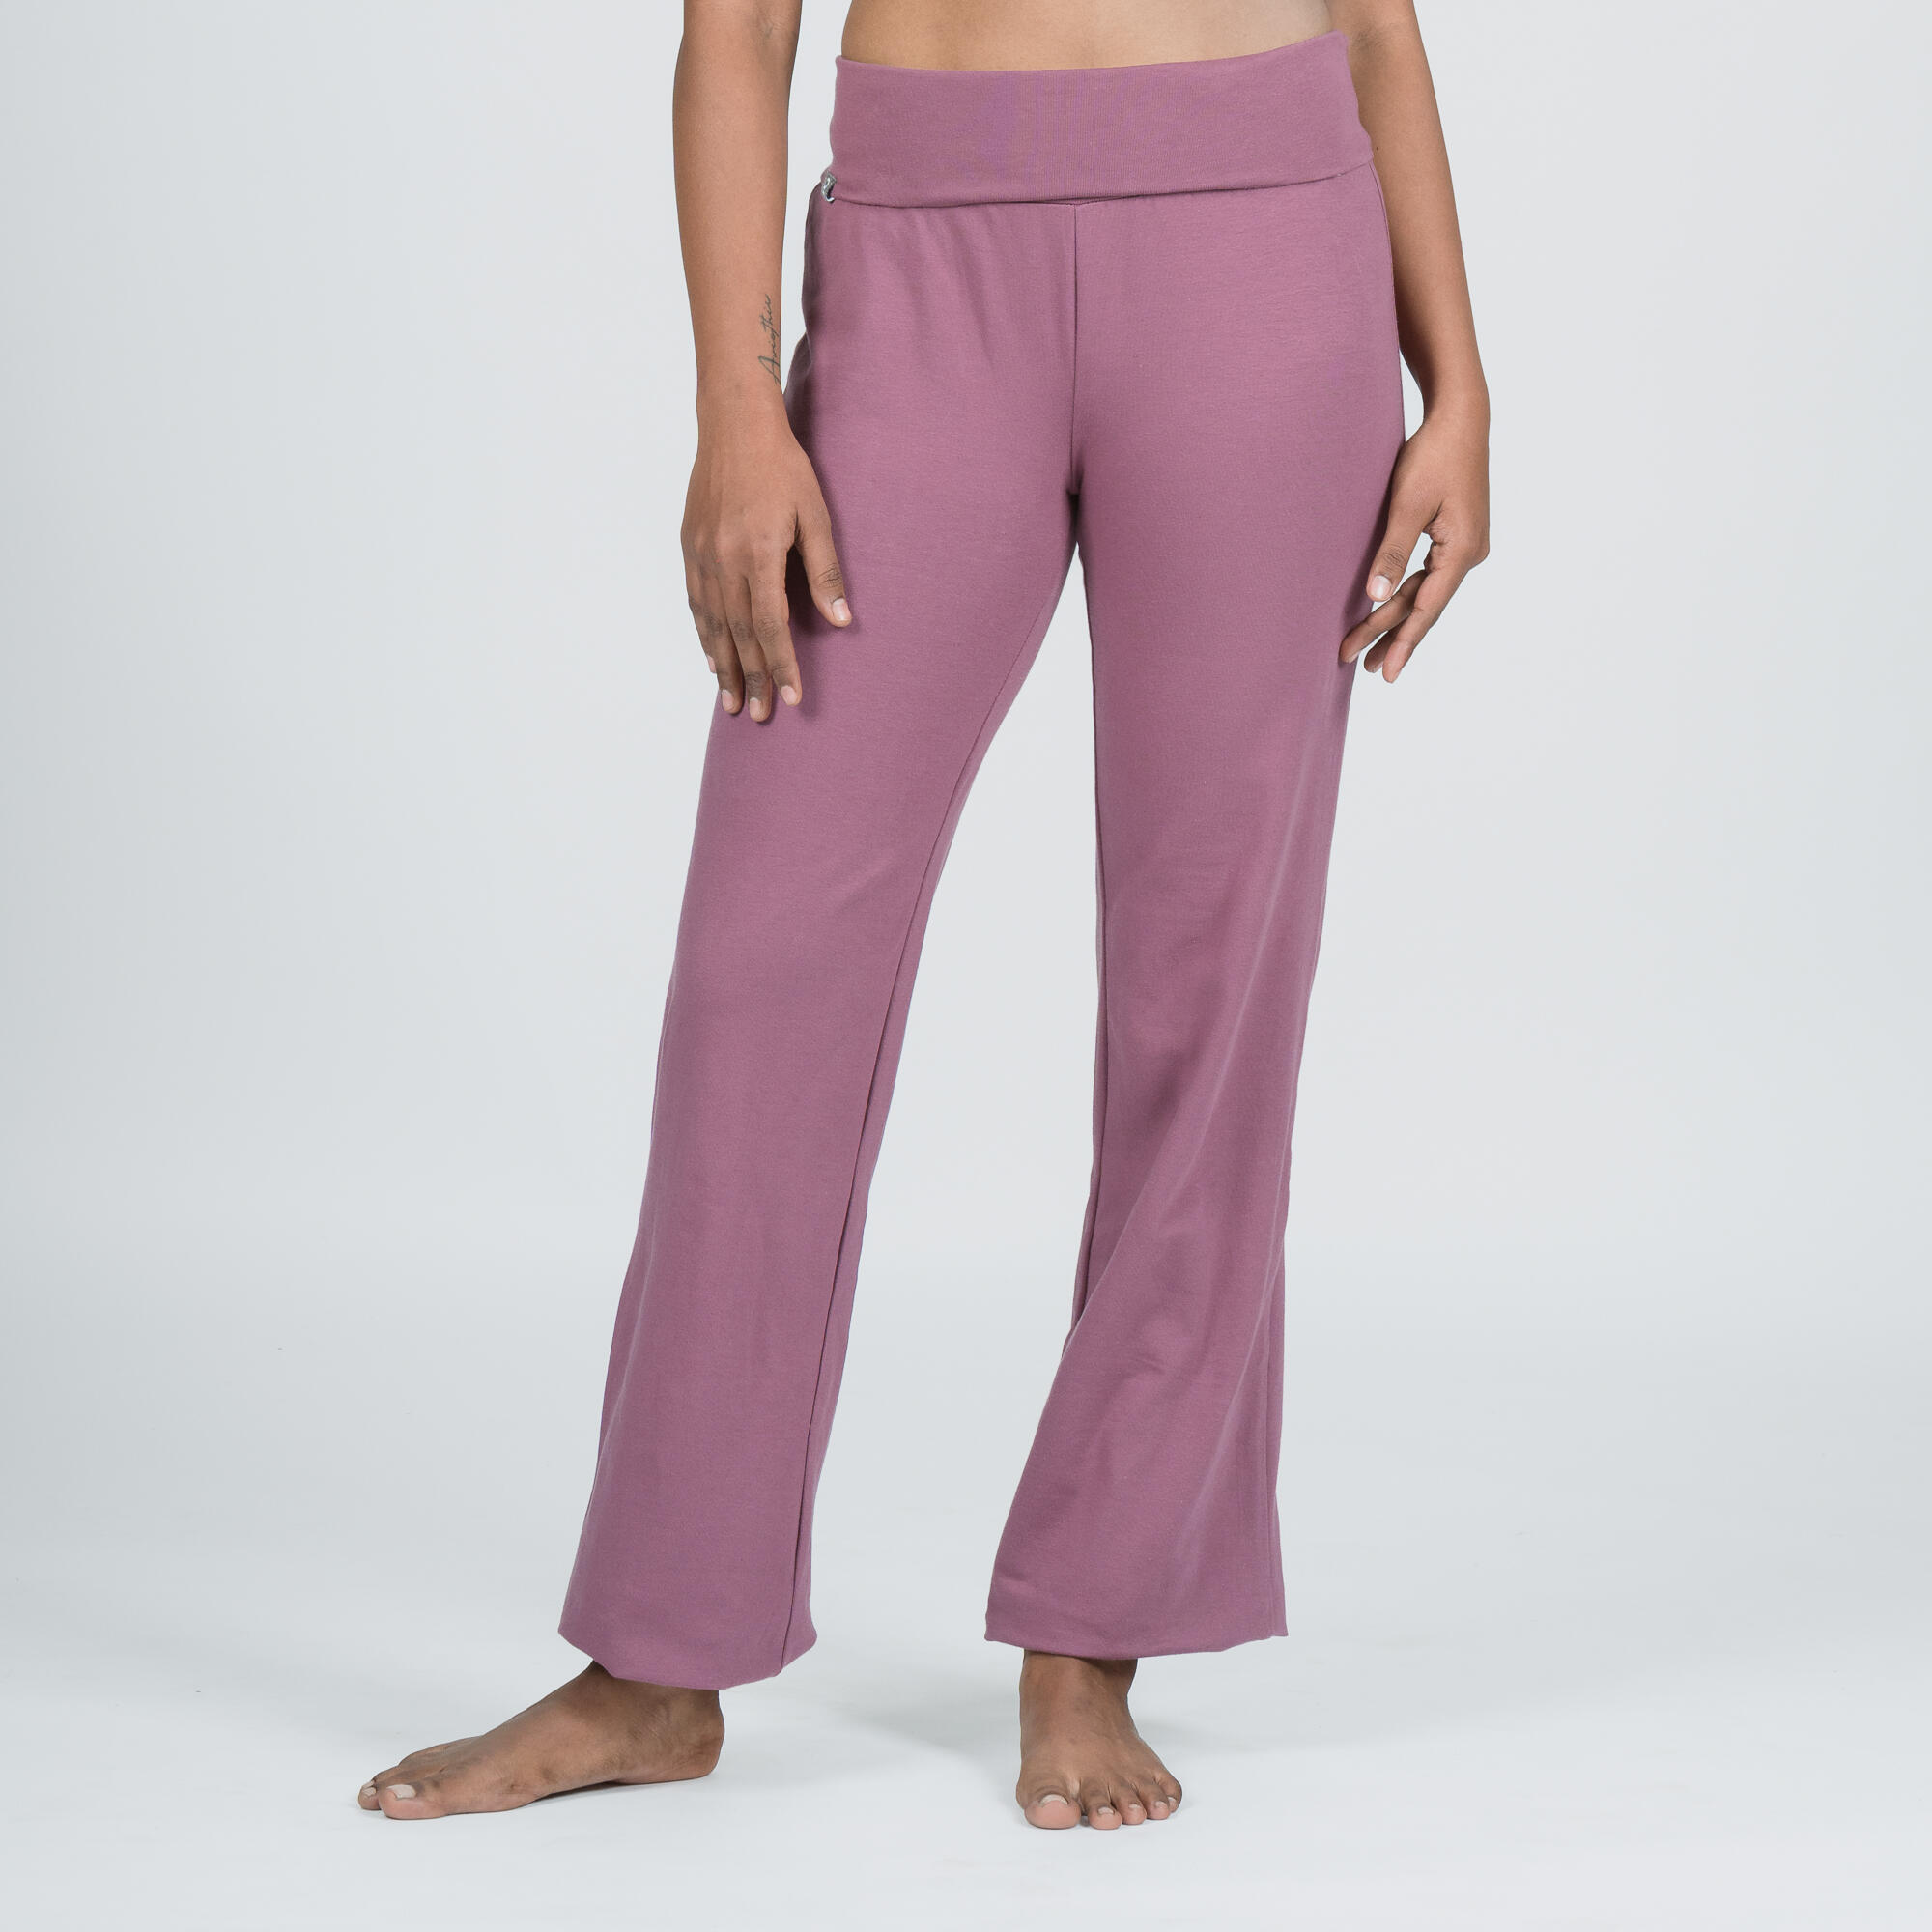 Women Yoga Organic Cotton Pants - Grape